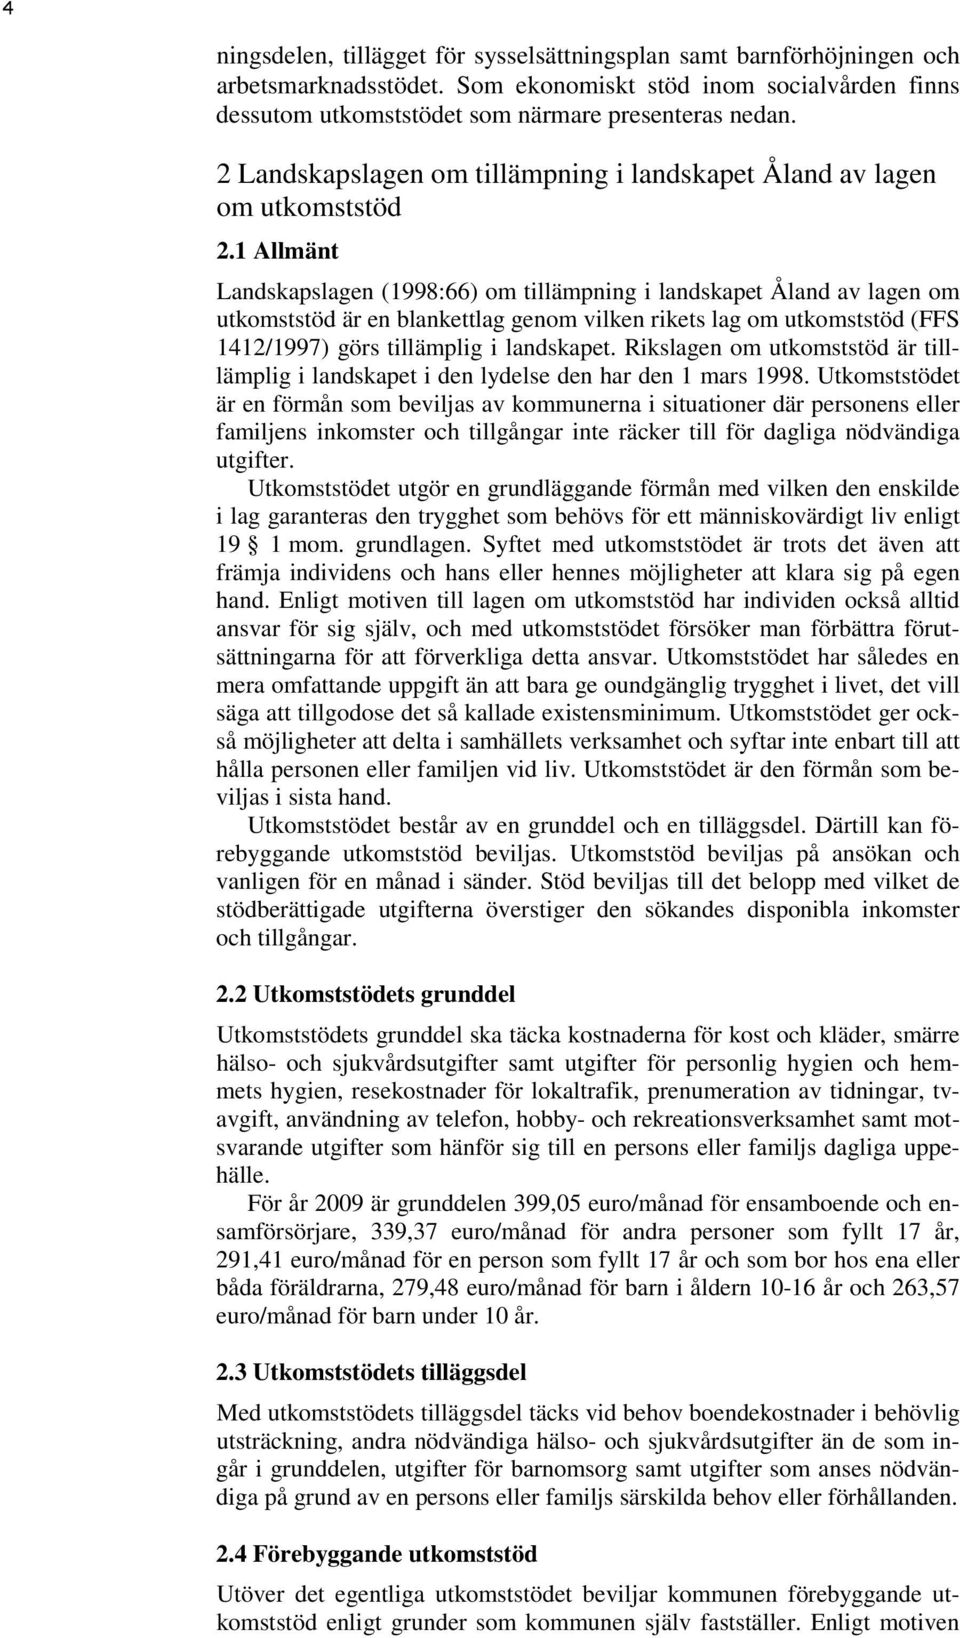 1 Allmänt Landskapslagen (1998:66) om tillämpning i landskapet Åland av lagen om utkomststöd är en blankettlag genom vilken rikets lag om utkomststöd (FFS 1412/1997) görs tillämplig i landskapet.